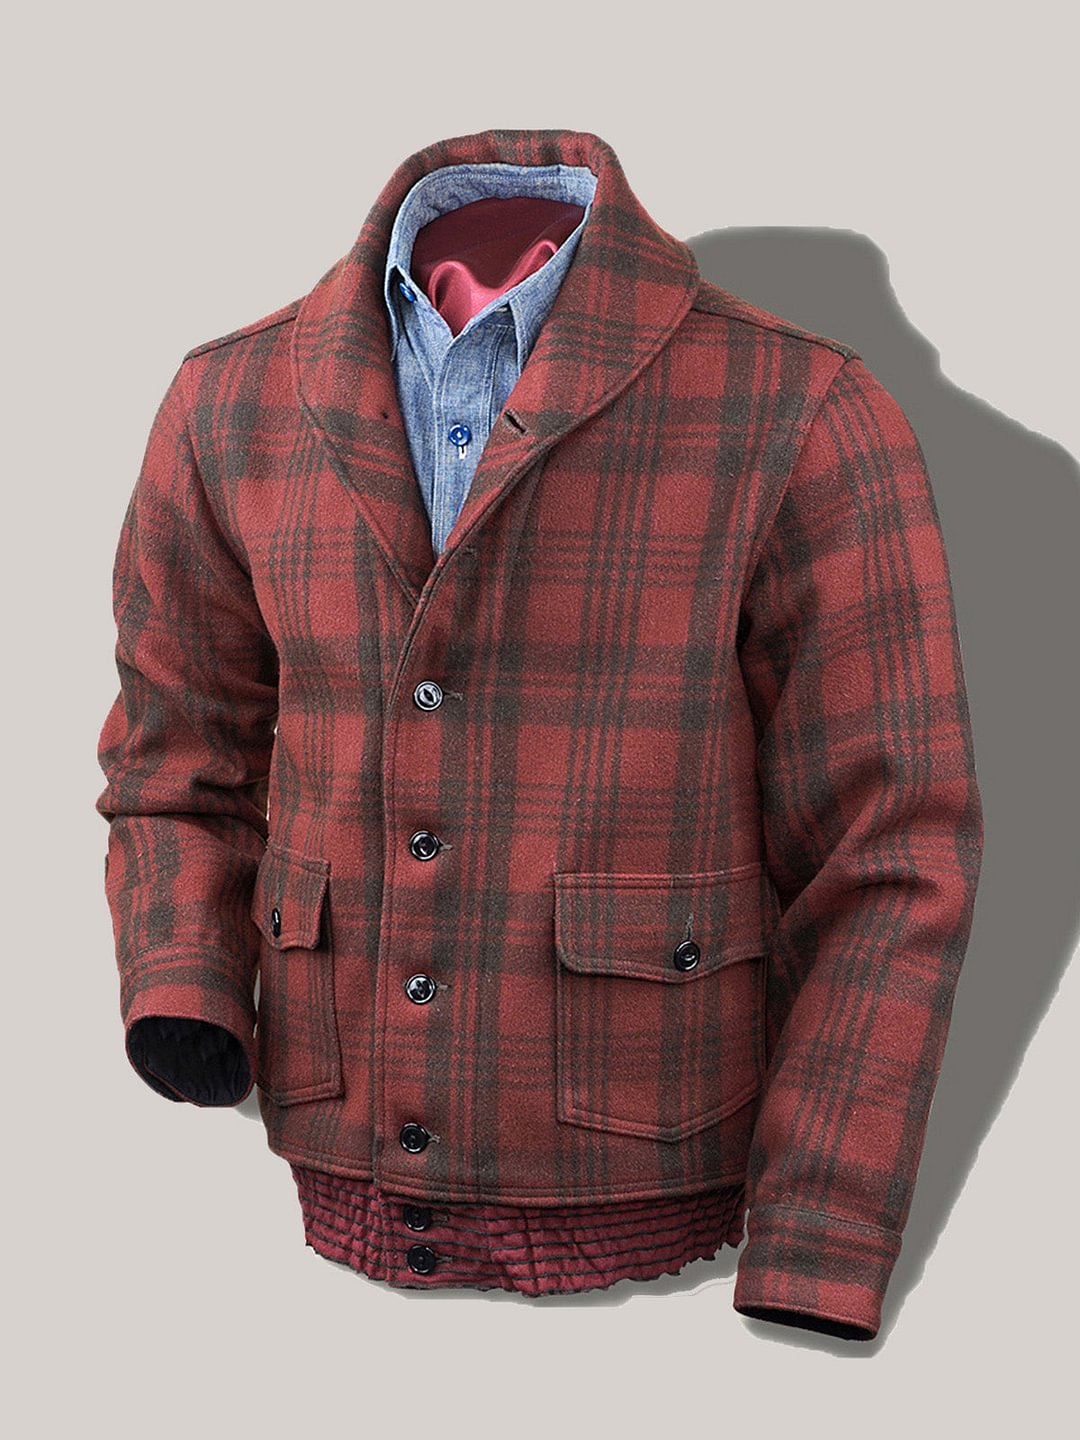 Men's 1930's Men's Wool Jacket Coat in Red Plaid - vzzhome